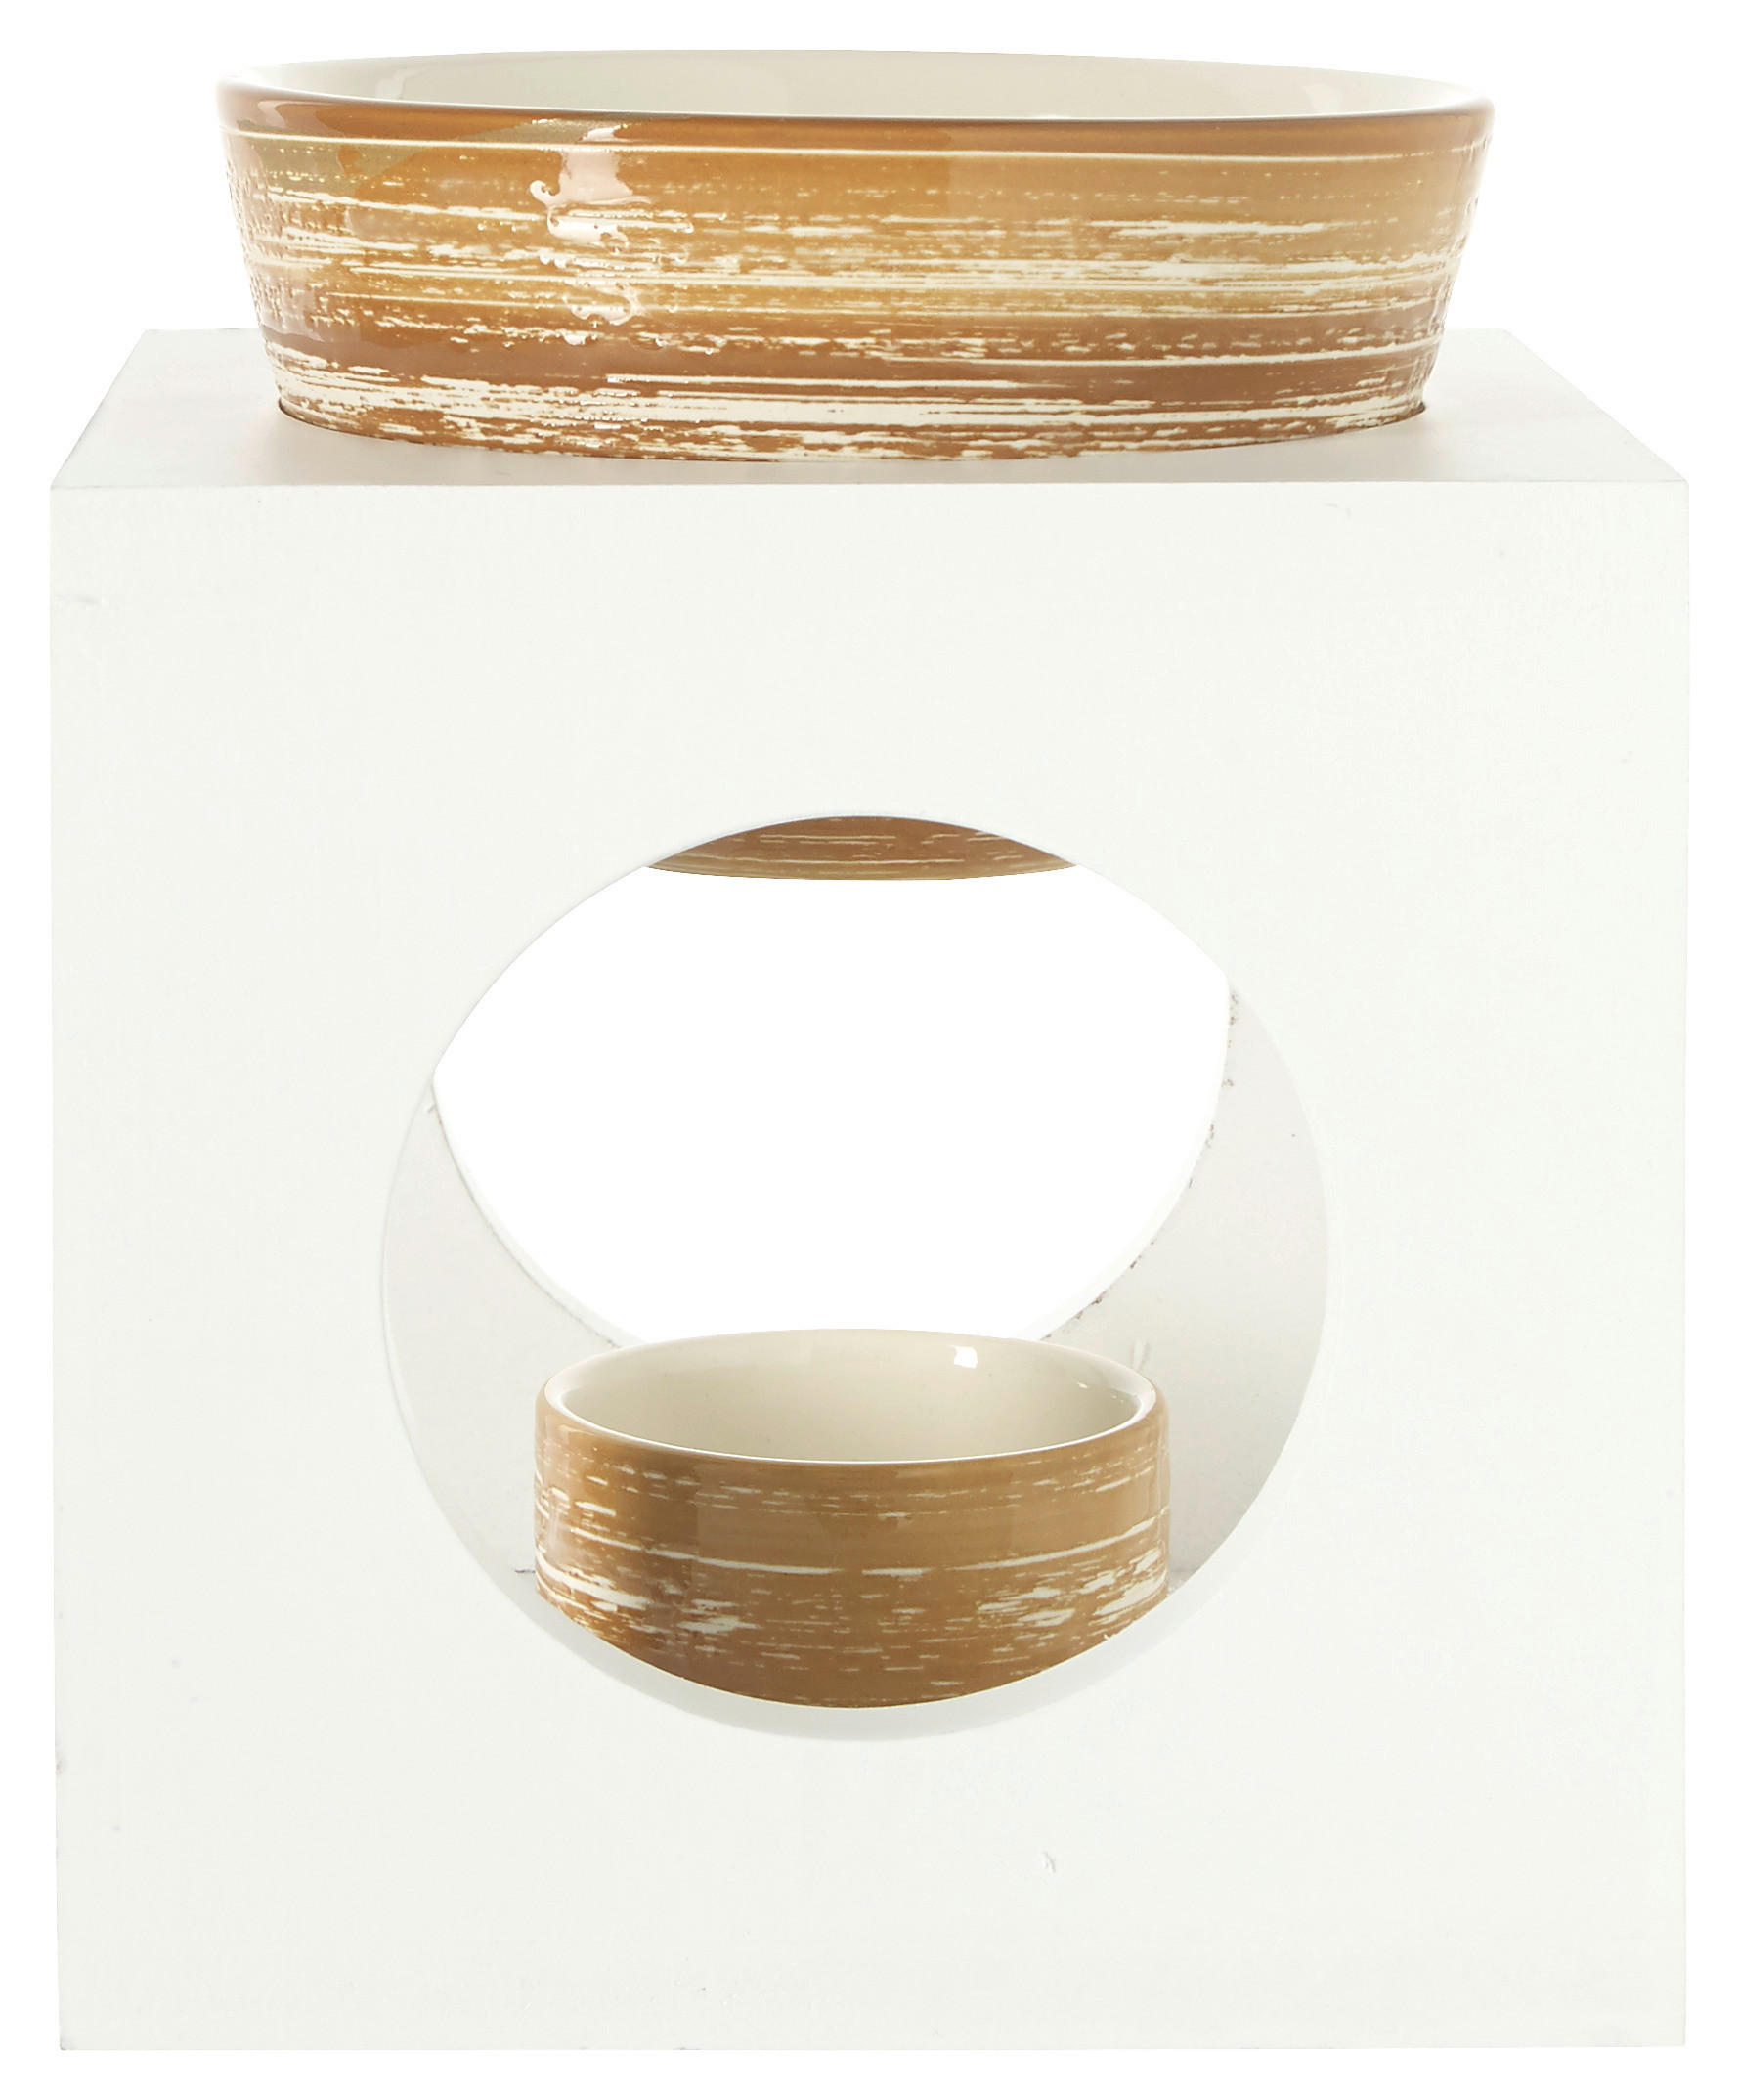 AROMALAMPA, dřevo, keramika - bílá, světle hnědá - sušené přírodní materiály